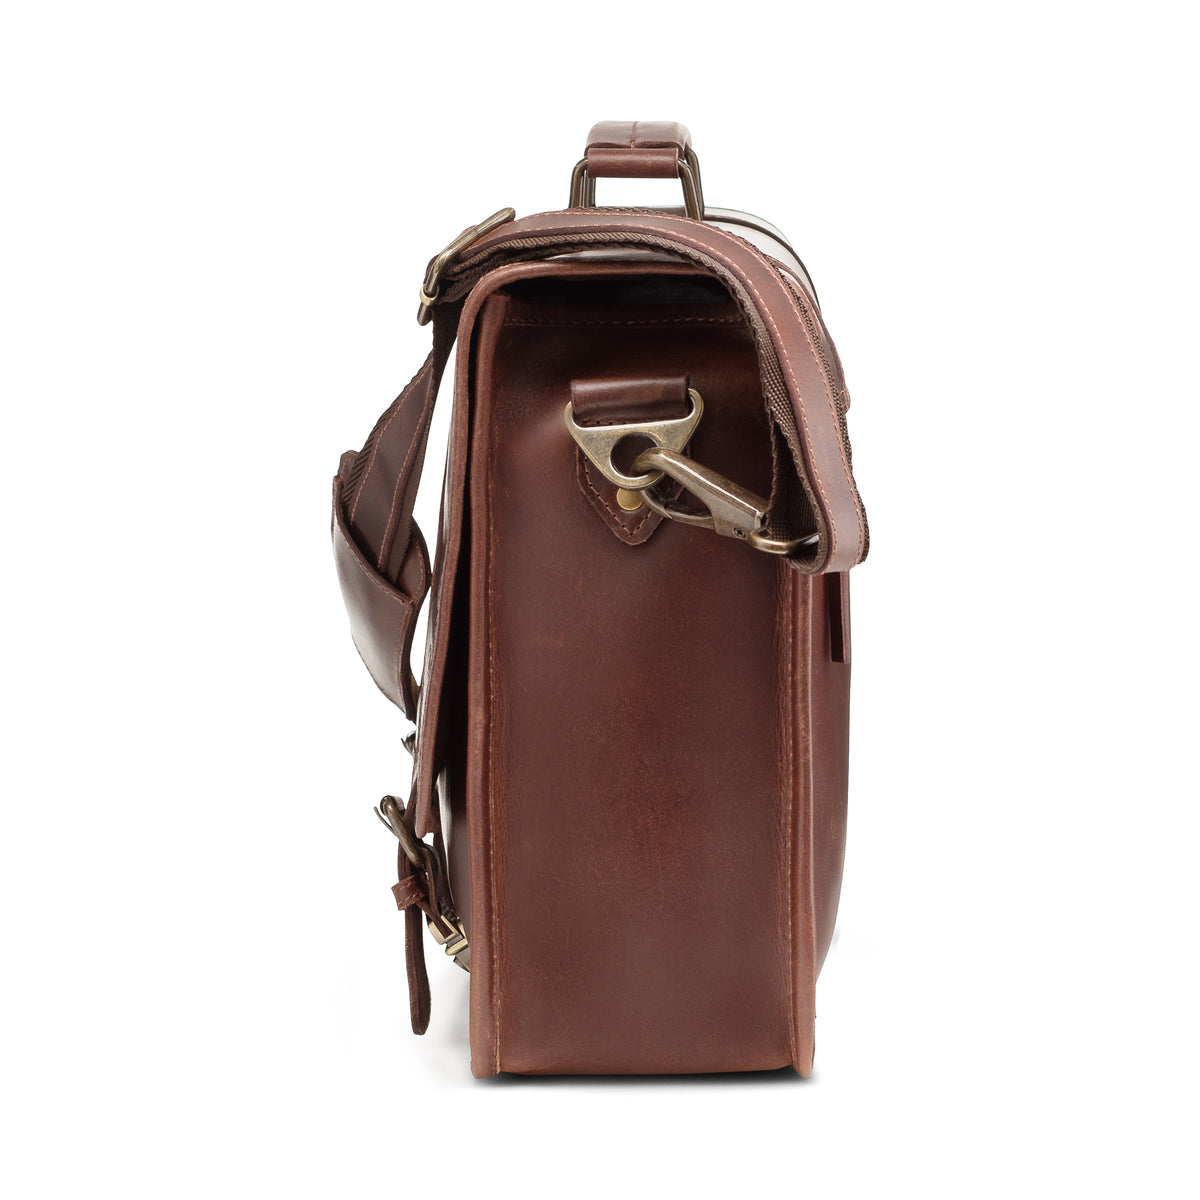 Leather Messenger Bag For Men – Levinson Leather Goods